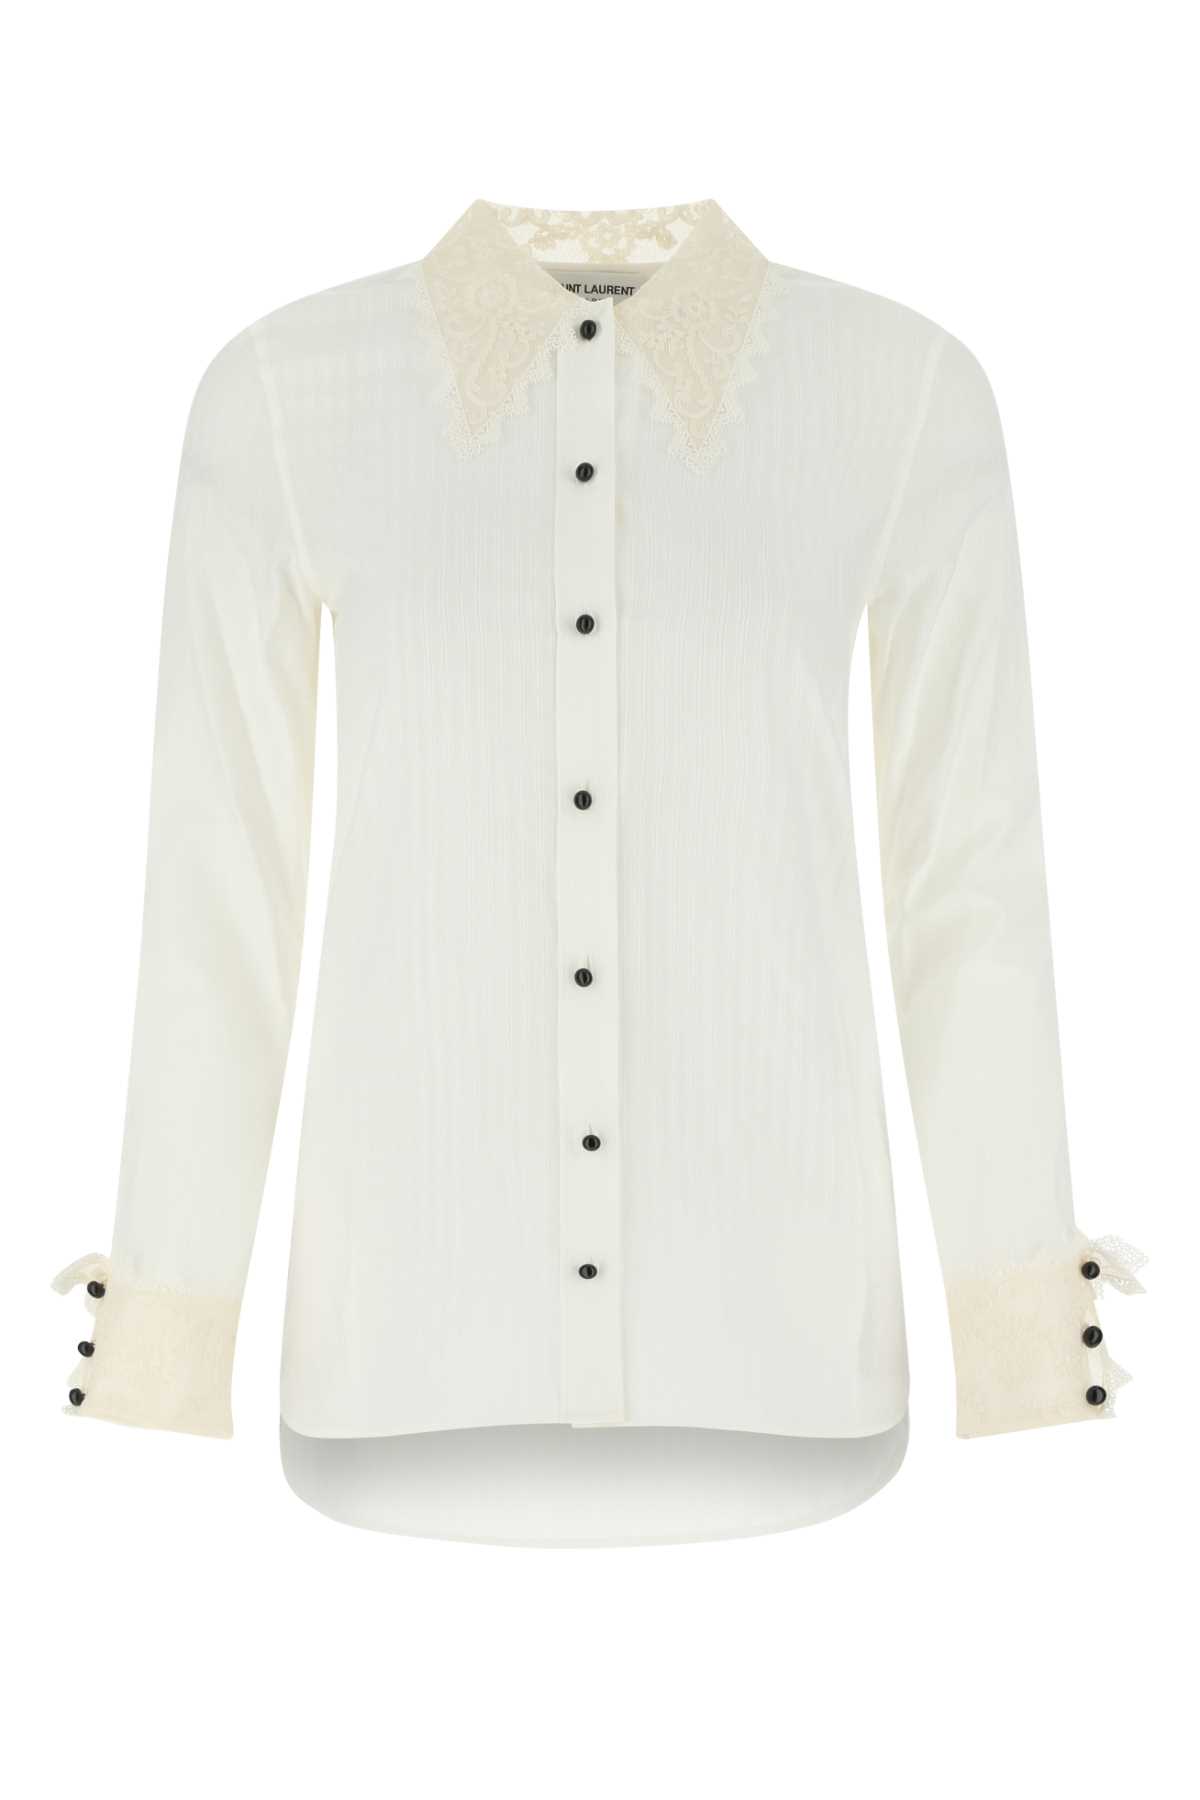 Saint Laurent White Cotton Blend Shirt